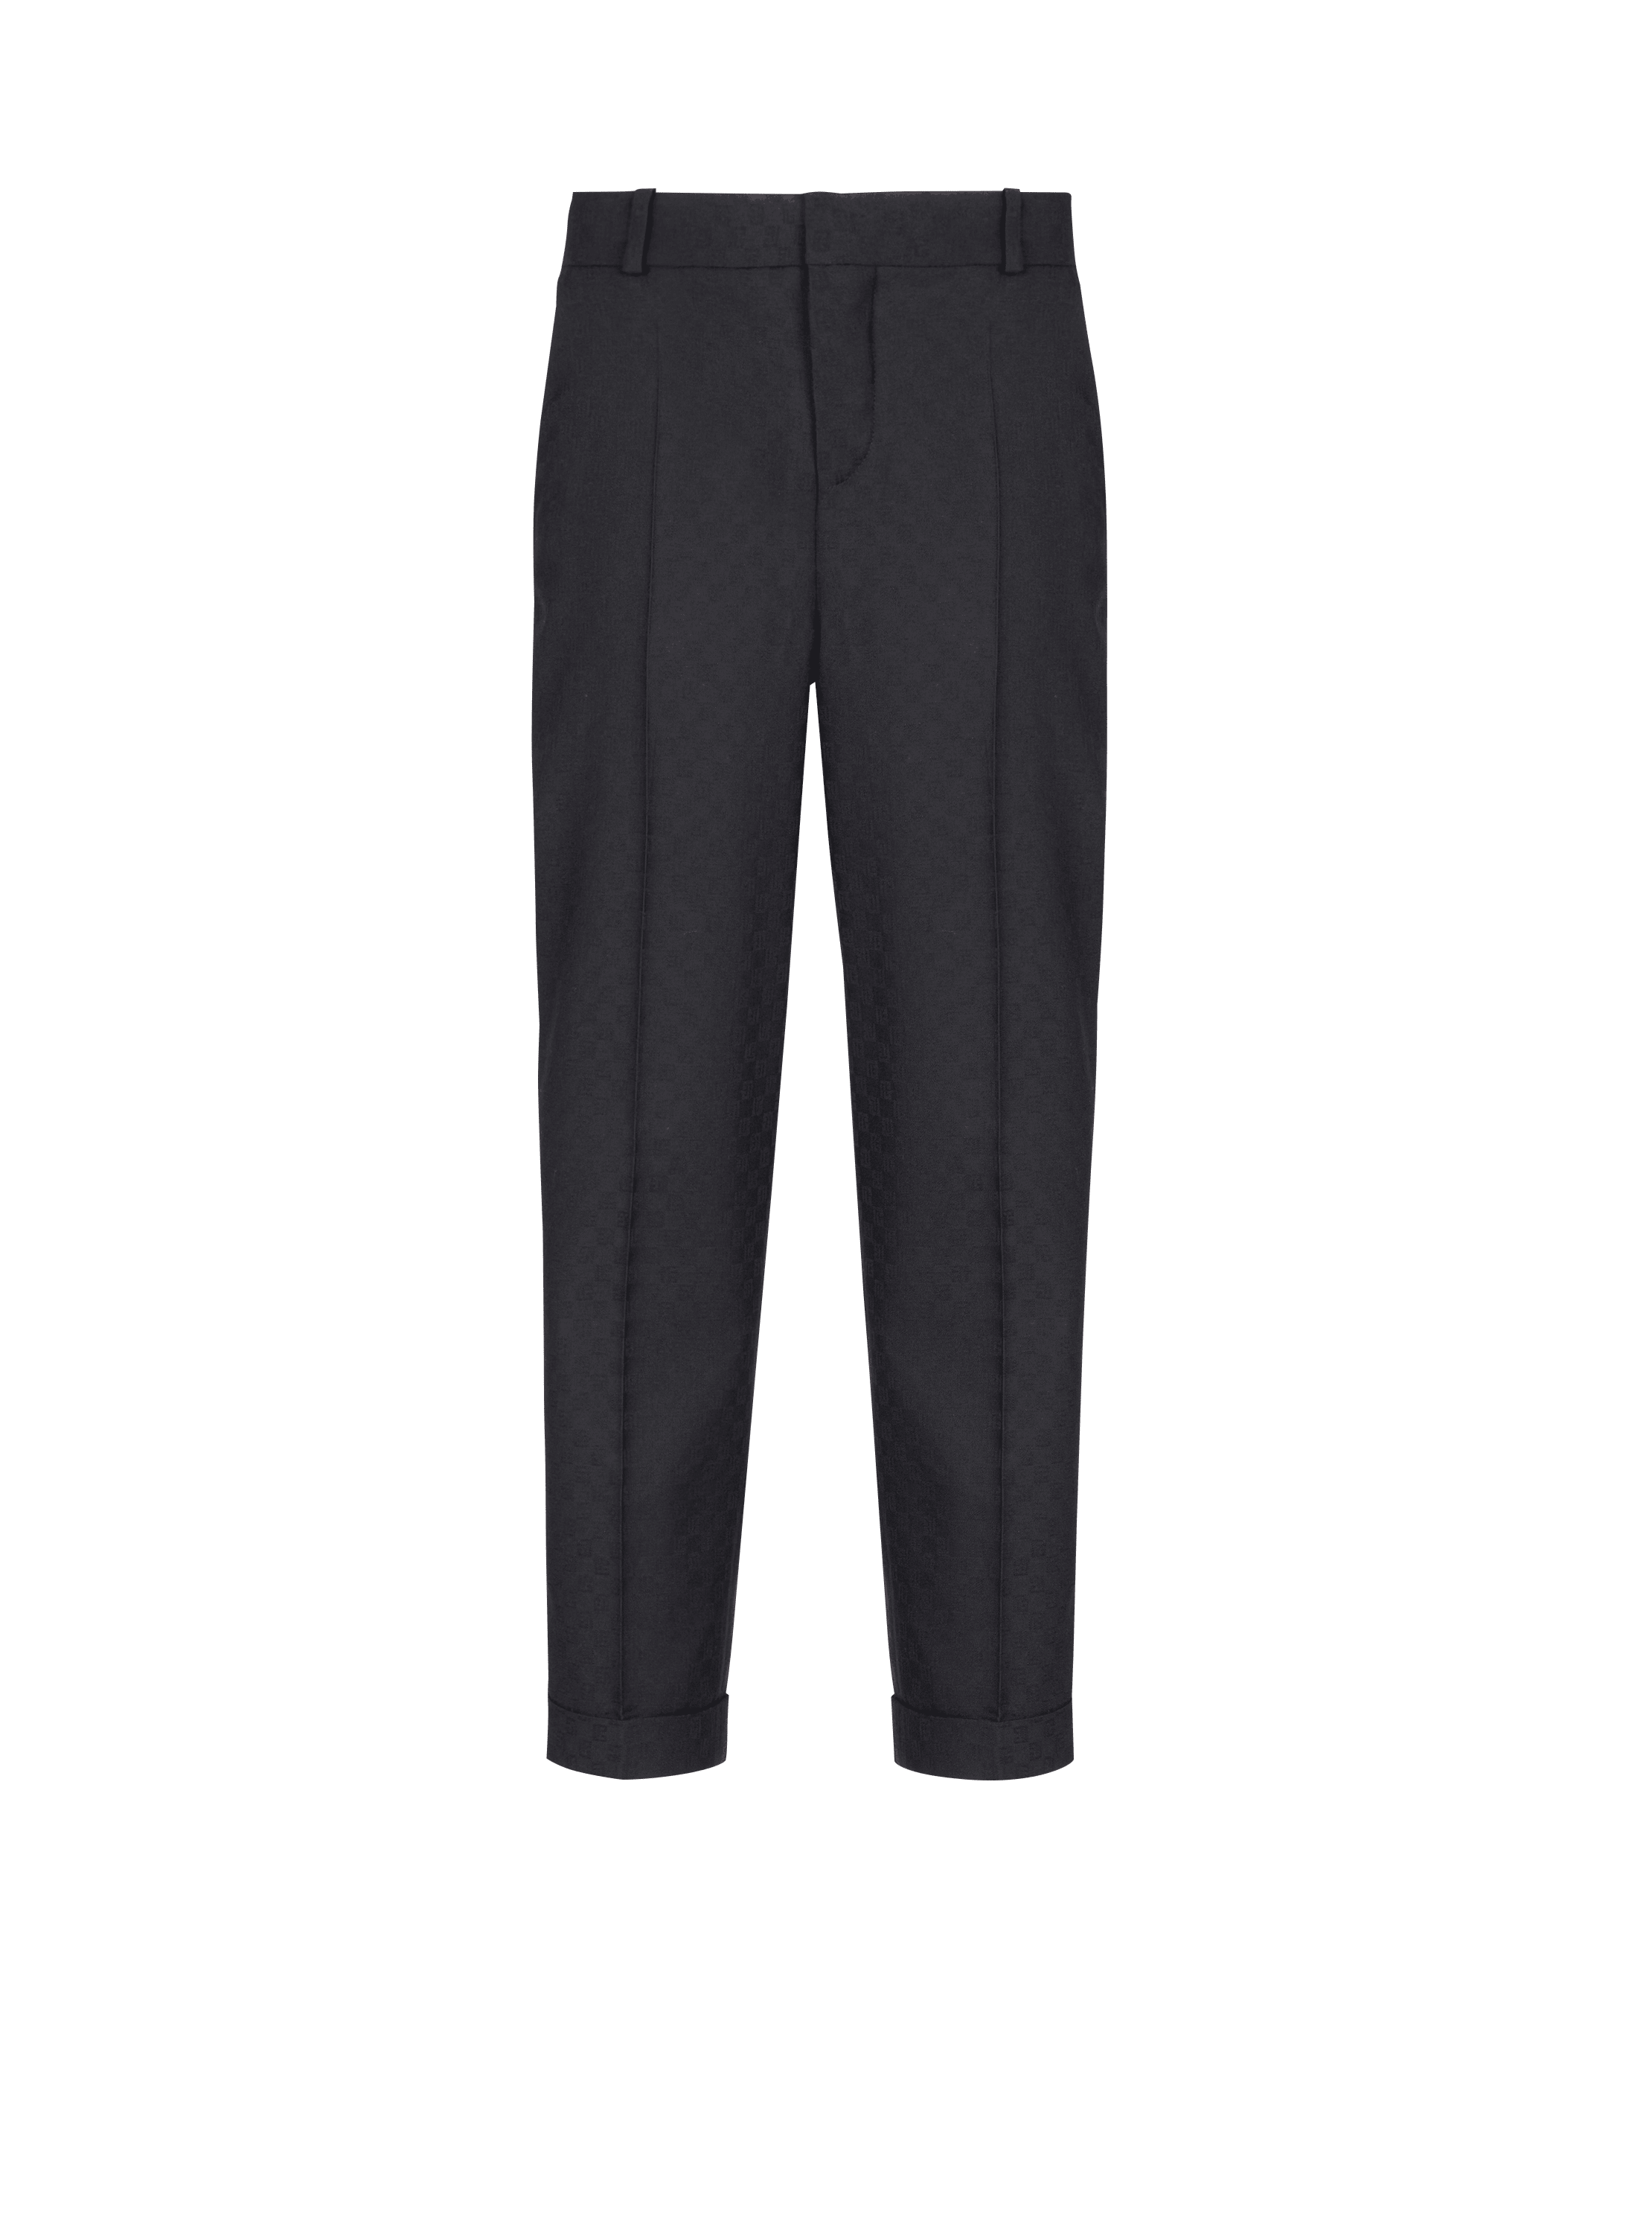 Pantalones de lana con monograma, negro, hi-res